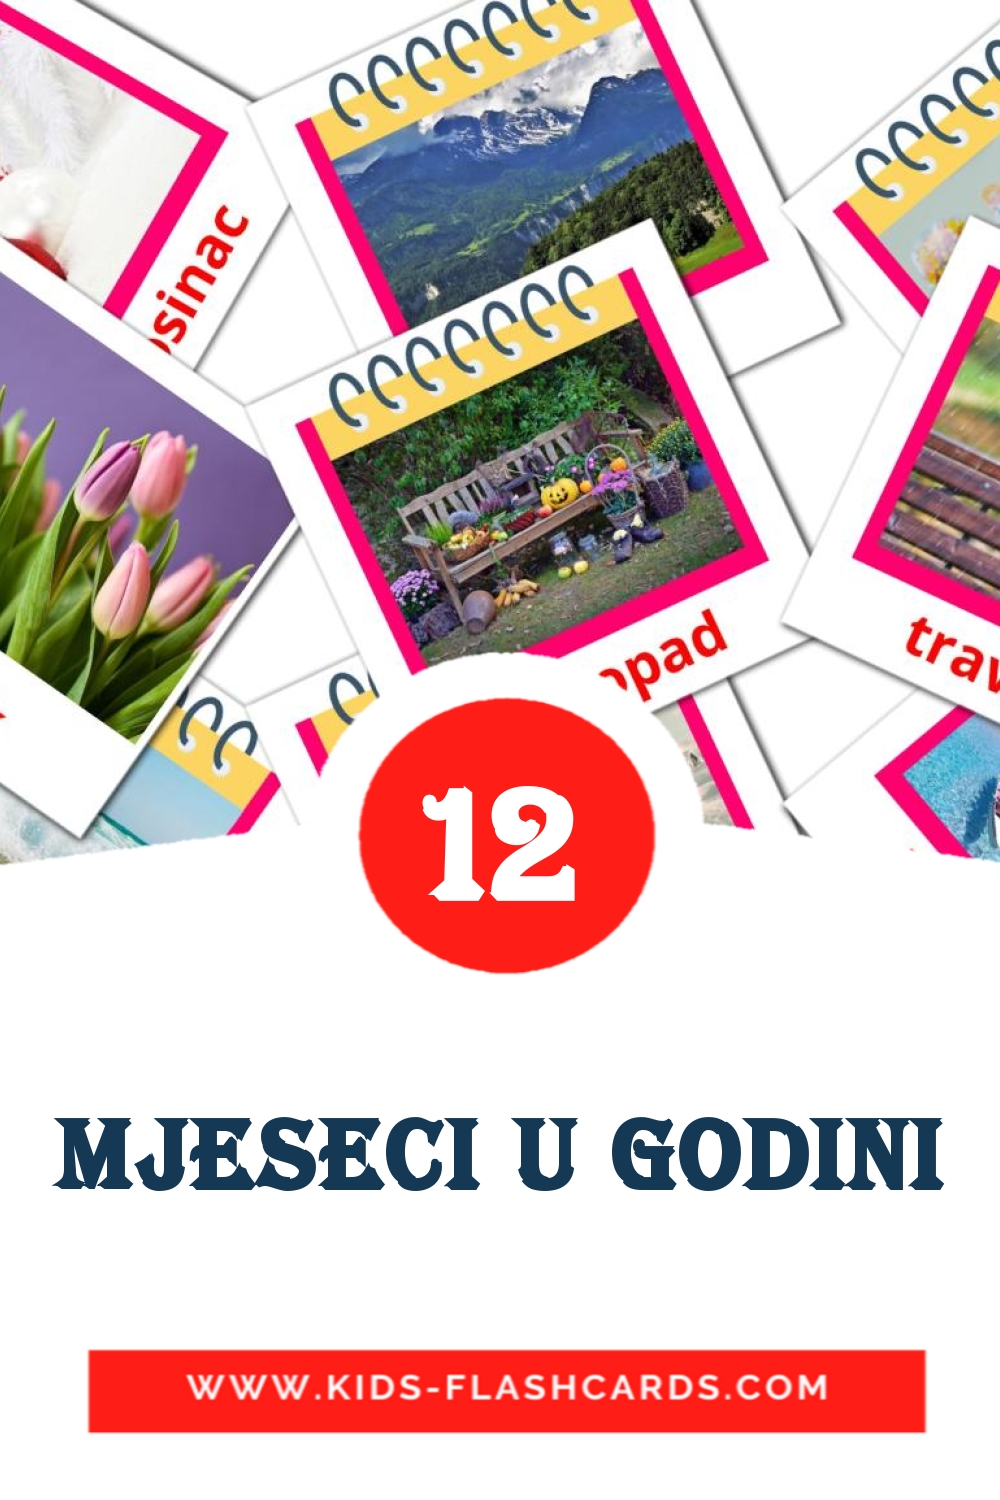 12 tarjetas didacticas de Mjeseci u godini para el jardín de infancia en croata